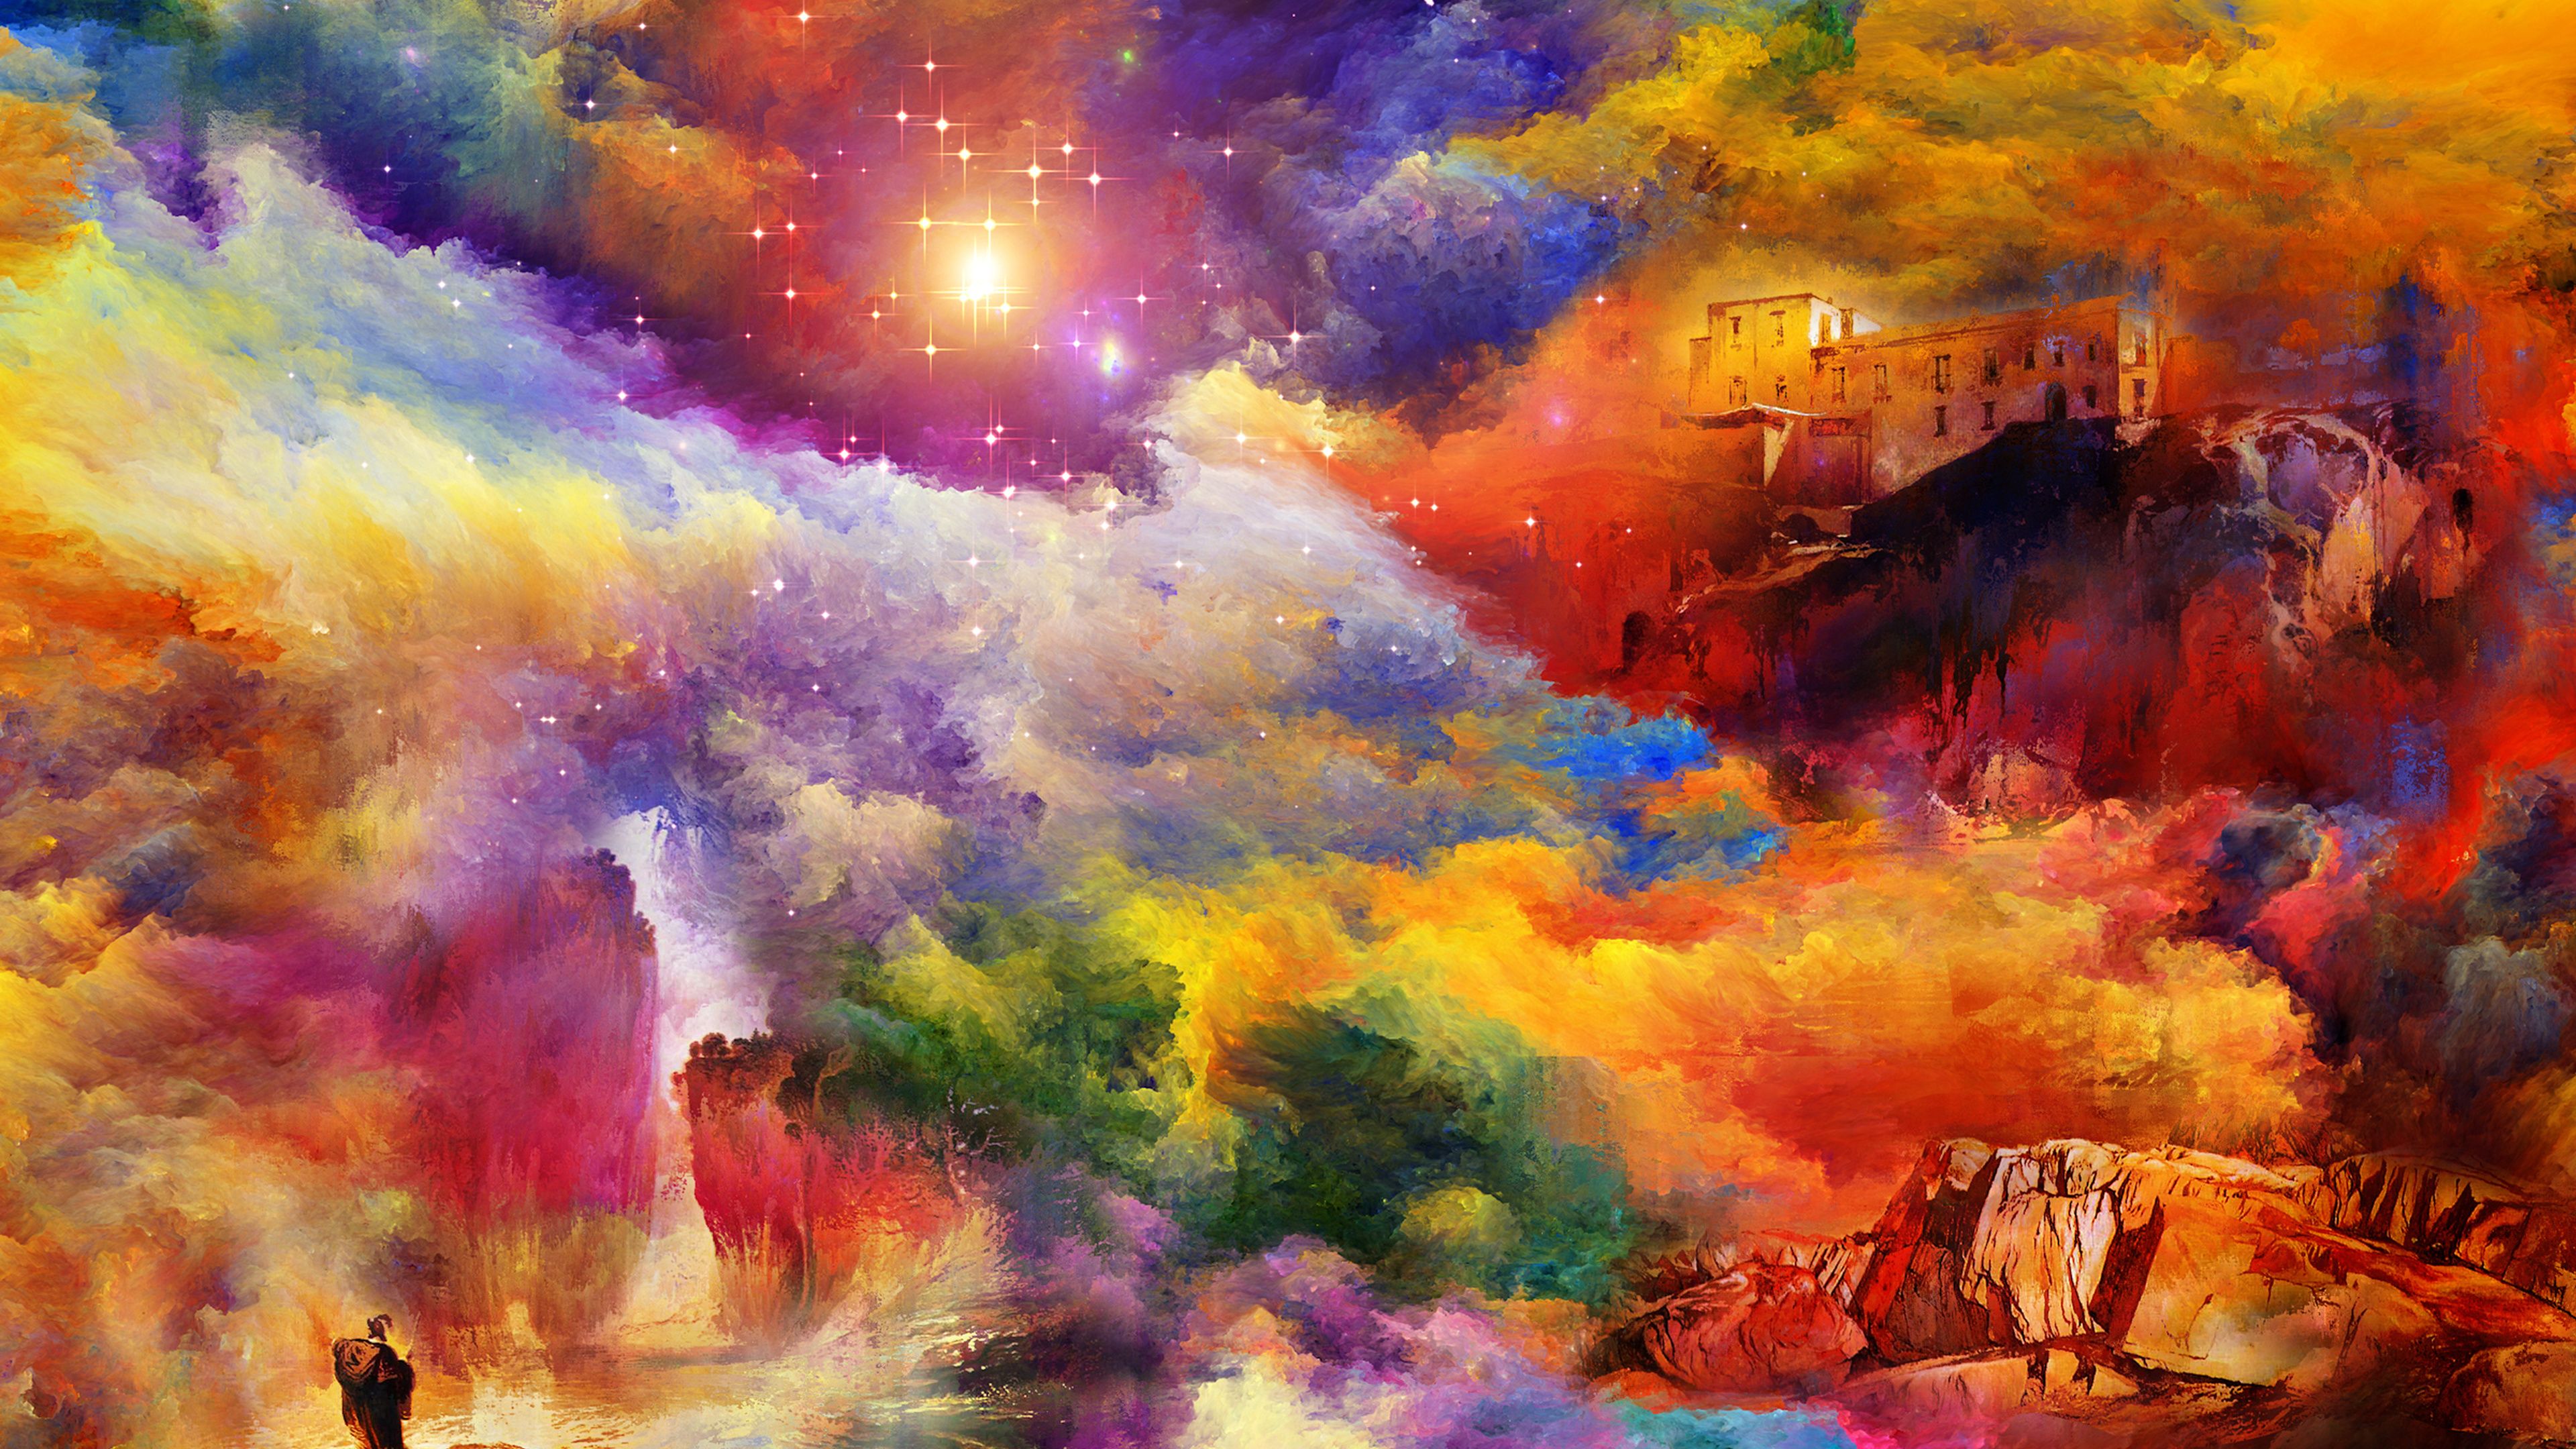 Fantasy Landscape 4k Ultra HD Wallpaper. Background Image